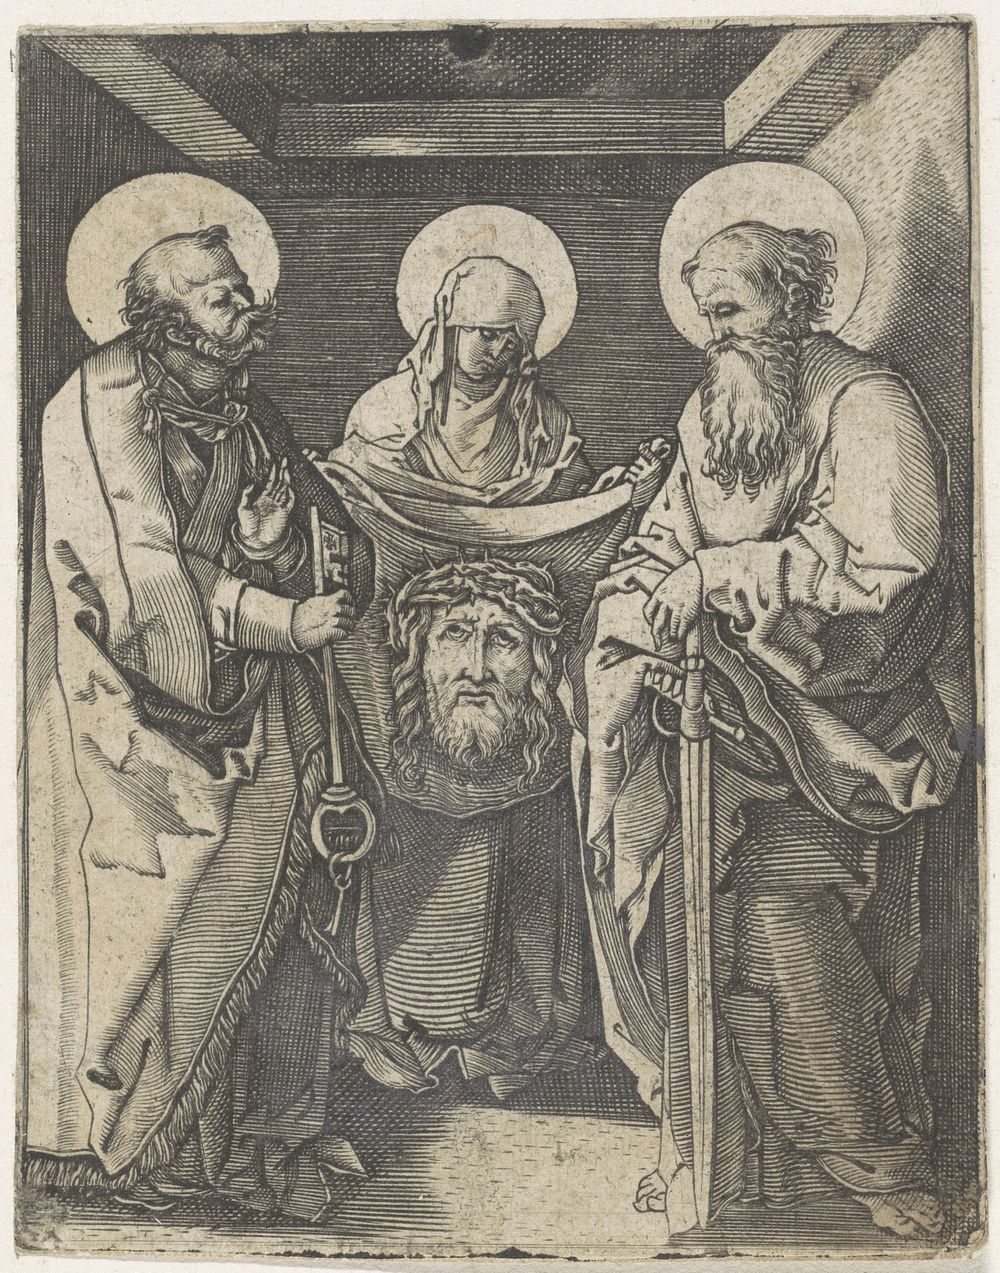 Heilige Veronica met zweetdoek staand tussen heiligen Petrus en Paulus (1481 - 1578) by anonymous and Albrecht Dürer